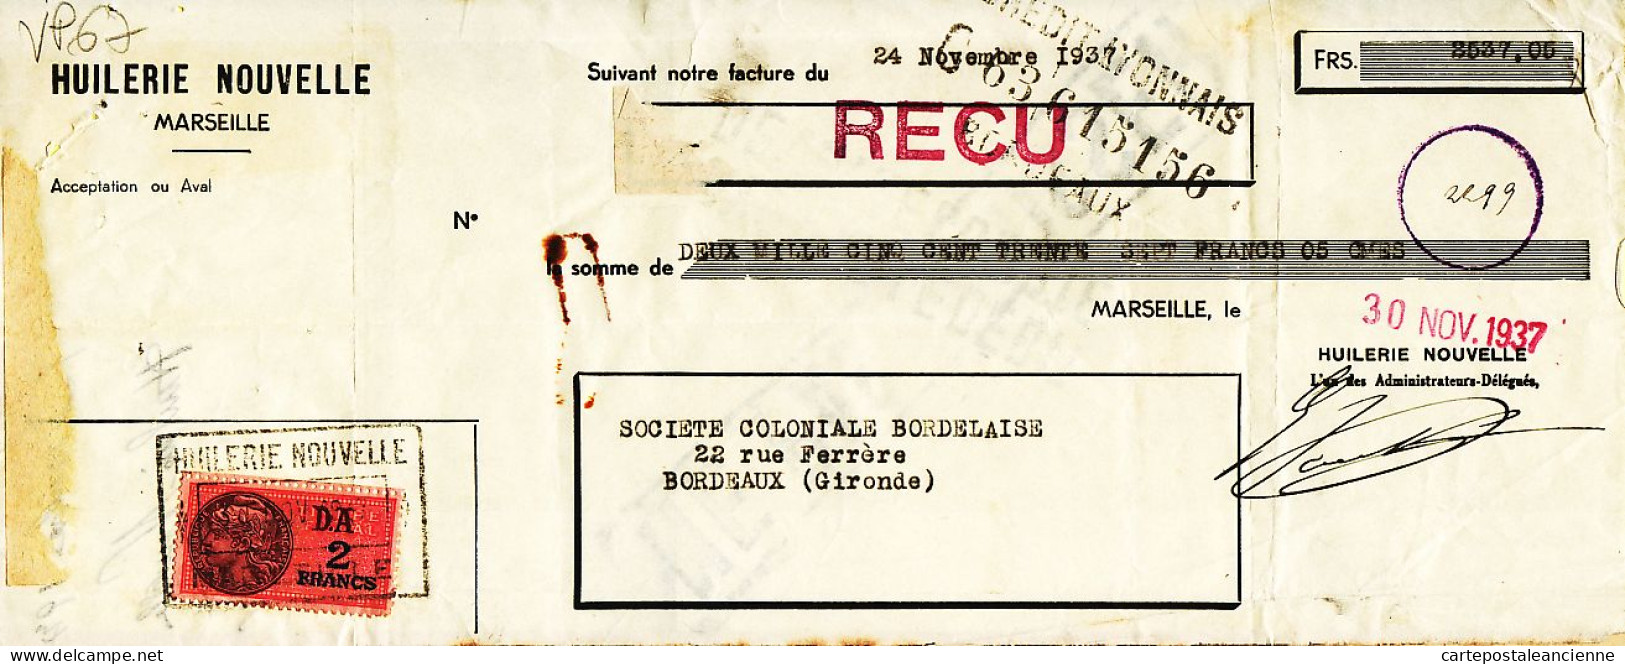 31276 / MARSEILLE Huilerie Nouvelle Lettre De Change 24.11.1937 à BESSE Coloniale Bordelaise Gironde Timbre Fiscal - Bills Of Exchange